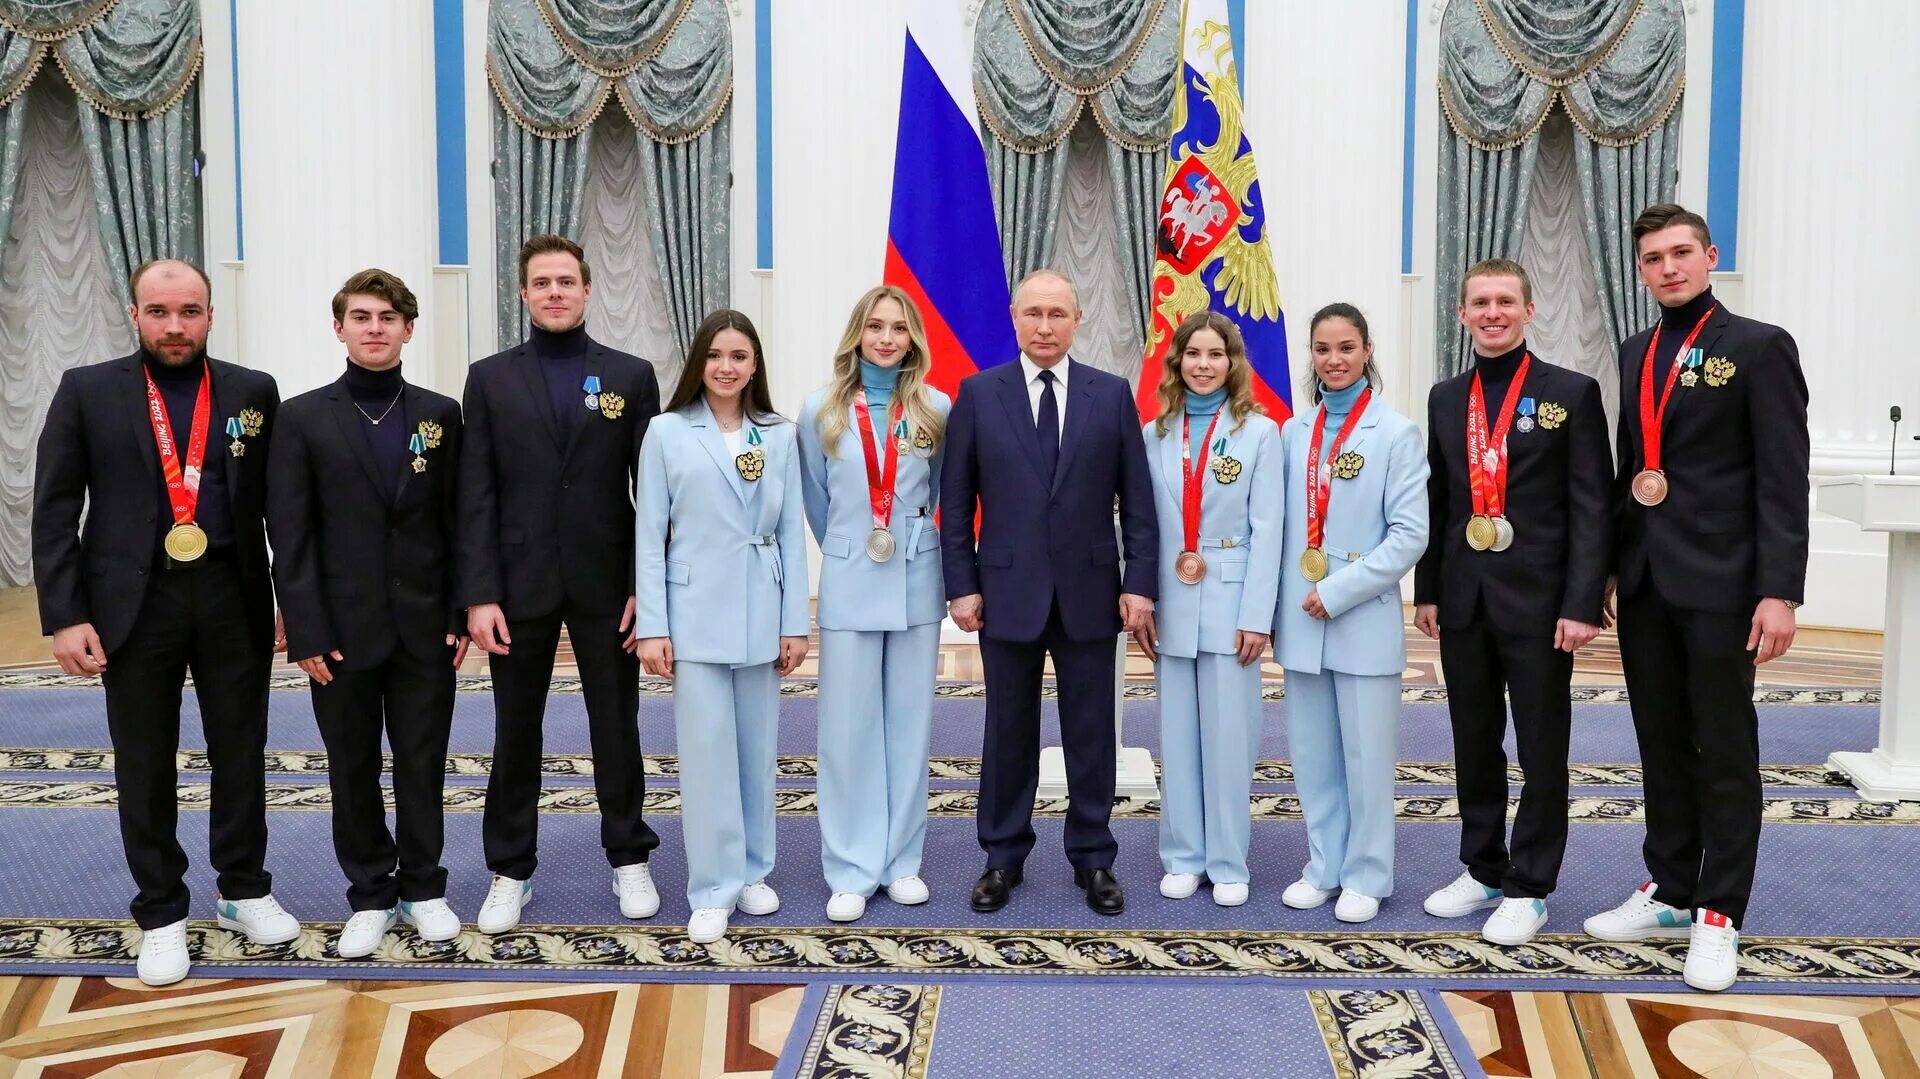 Награждение олимпиады 2022 в Кремле. Сегодня вручили награды